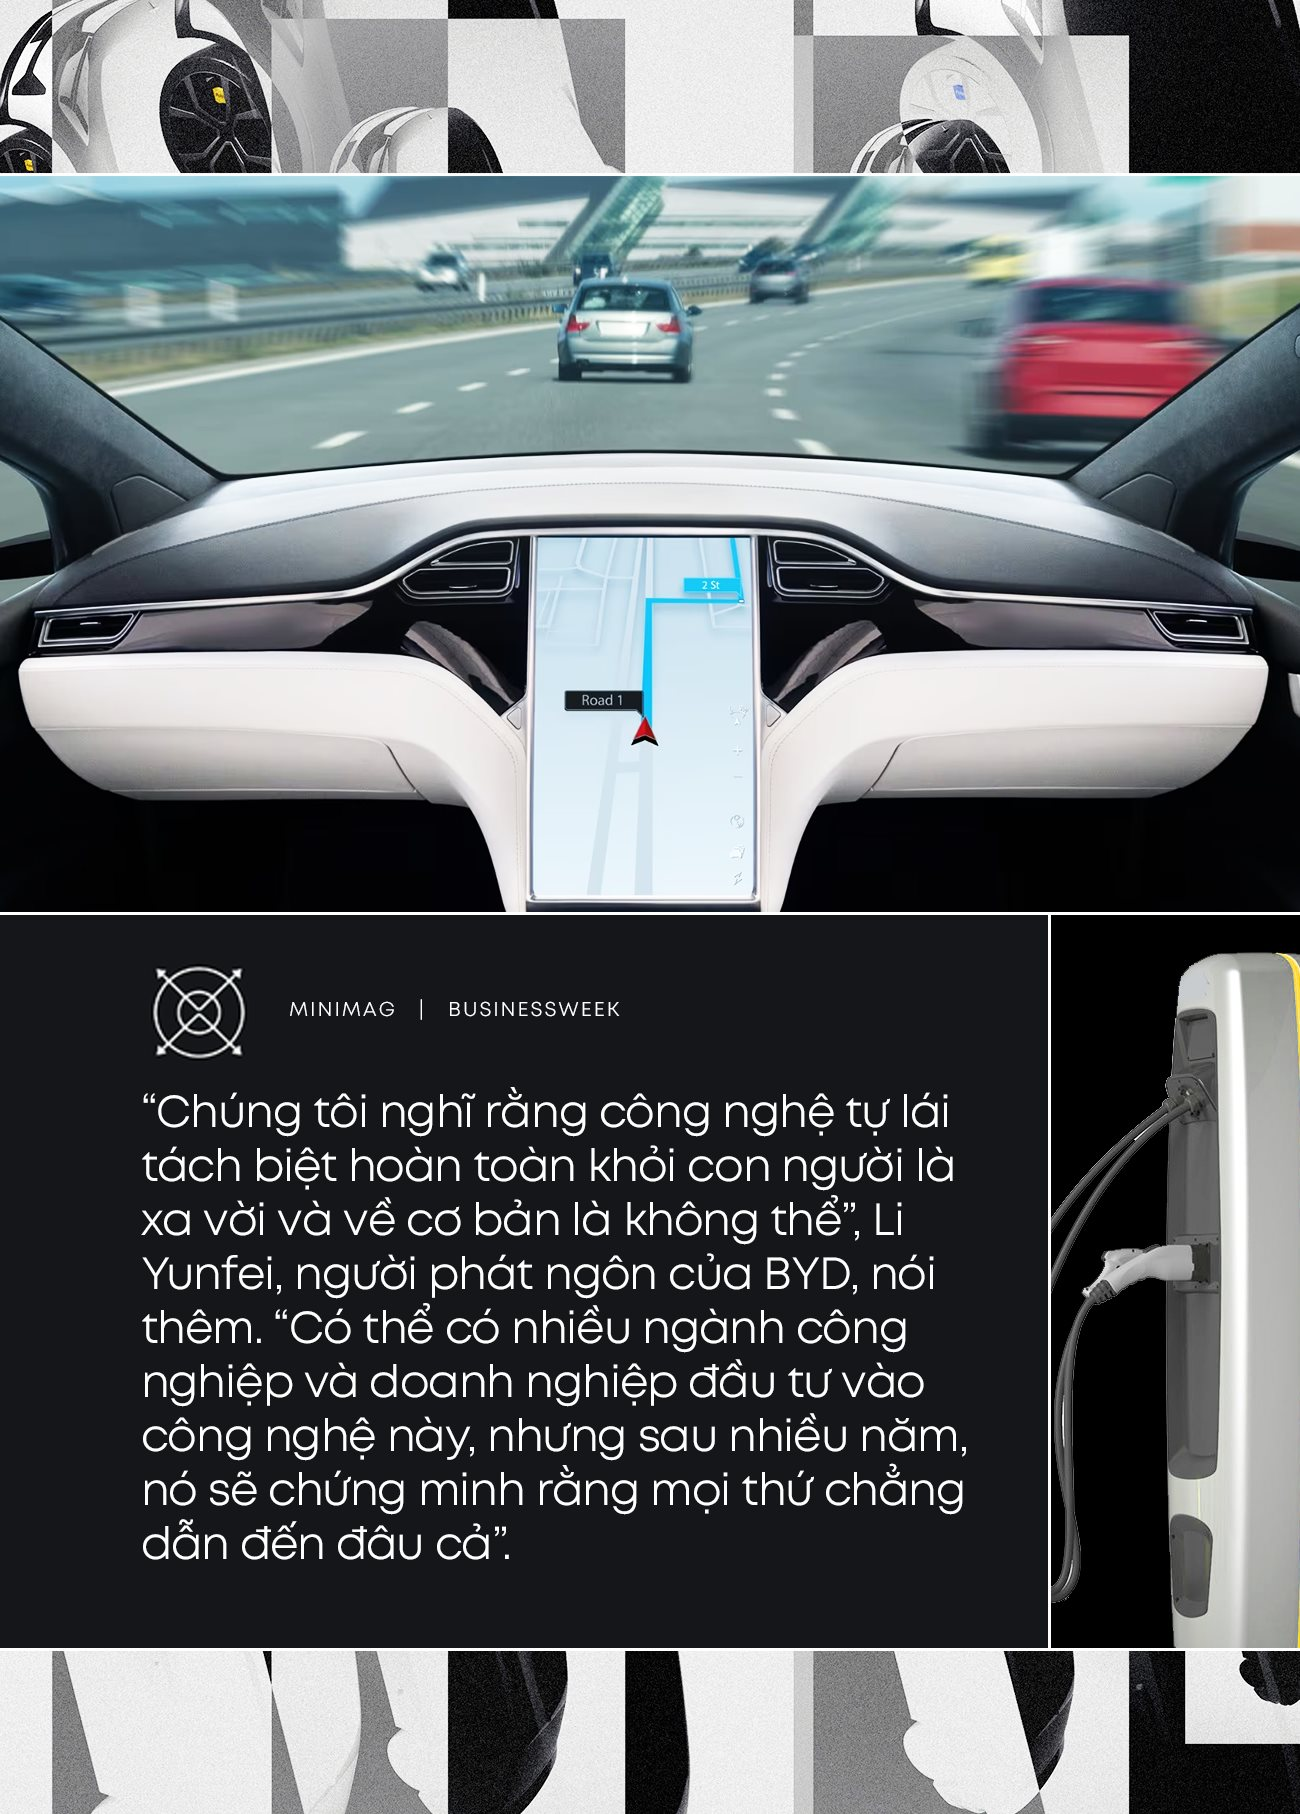 Khẩu chiến xoay quanh hình hài chiếc xe điện hoàn hảo: Tự lái, thông minh như điện thoại di động hay an toàn, pin khoẻ, giá cả phải chăng? - Ảnh 2.